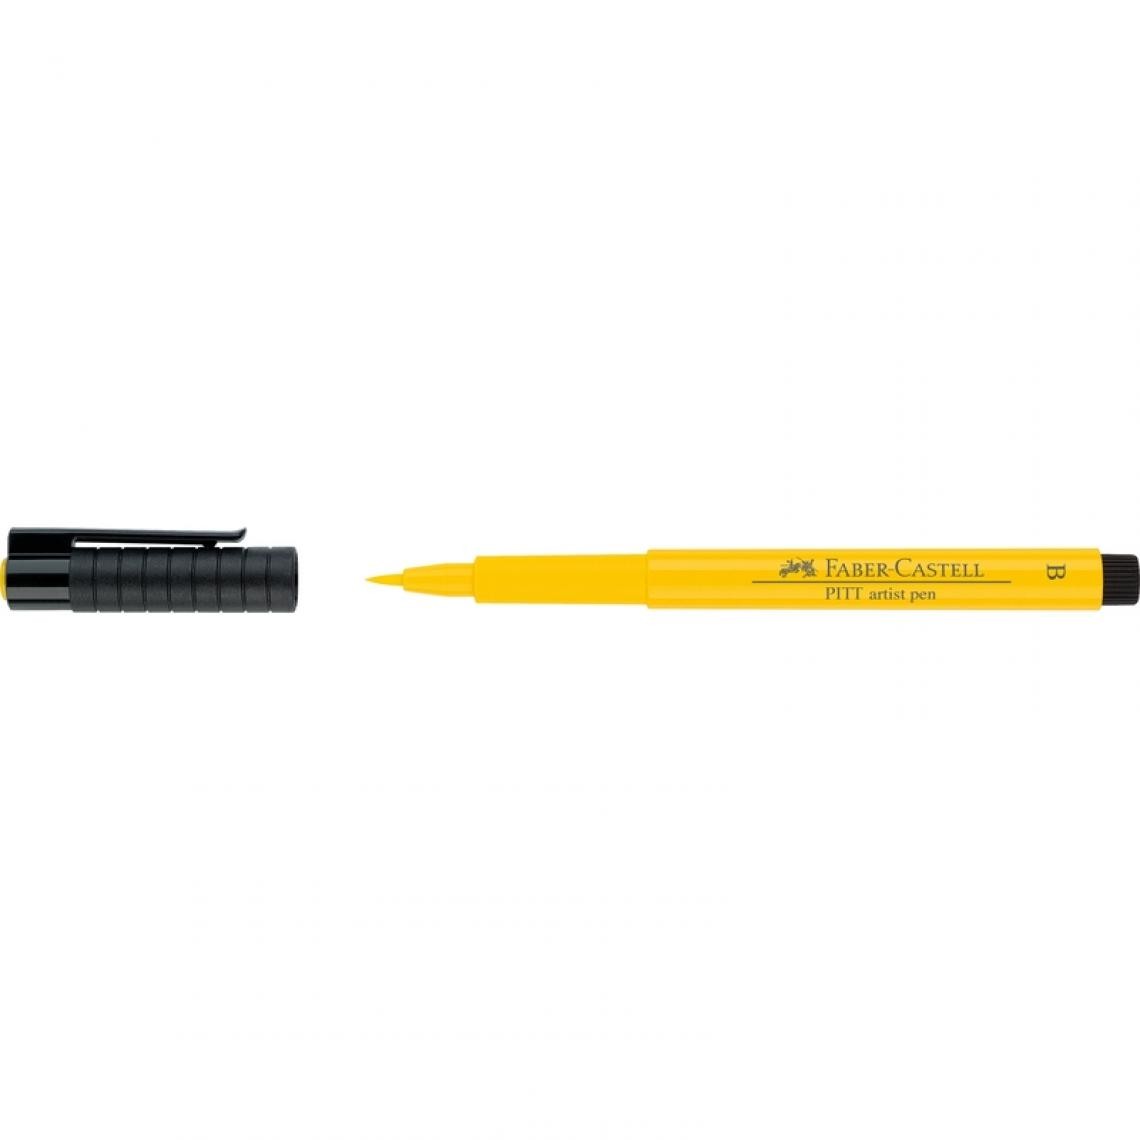 Faber-Castell - FABER-CASTELL Feutre PITT artist pen, jaune de cadmium () - Outils et accessoires du peintre